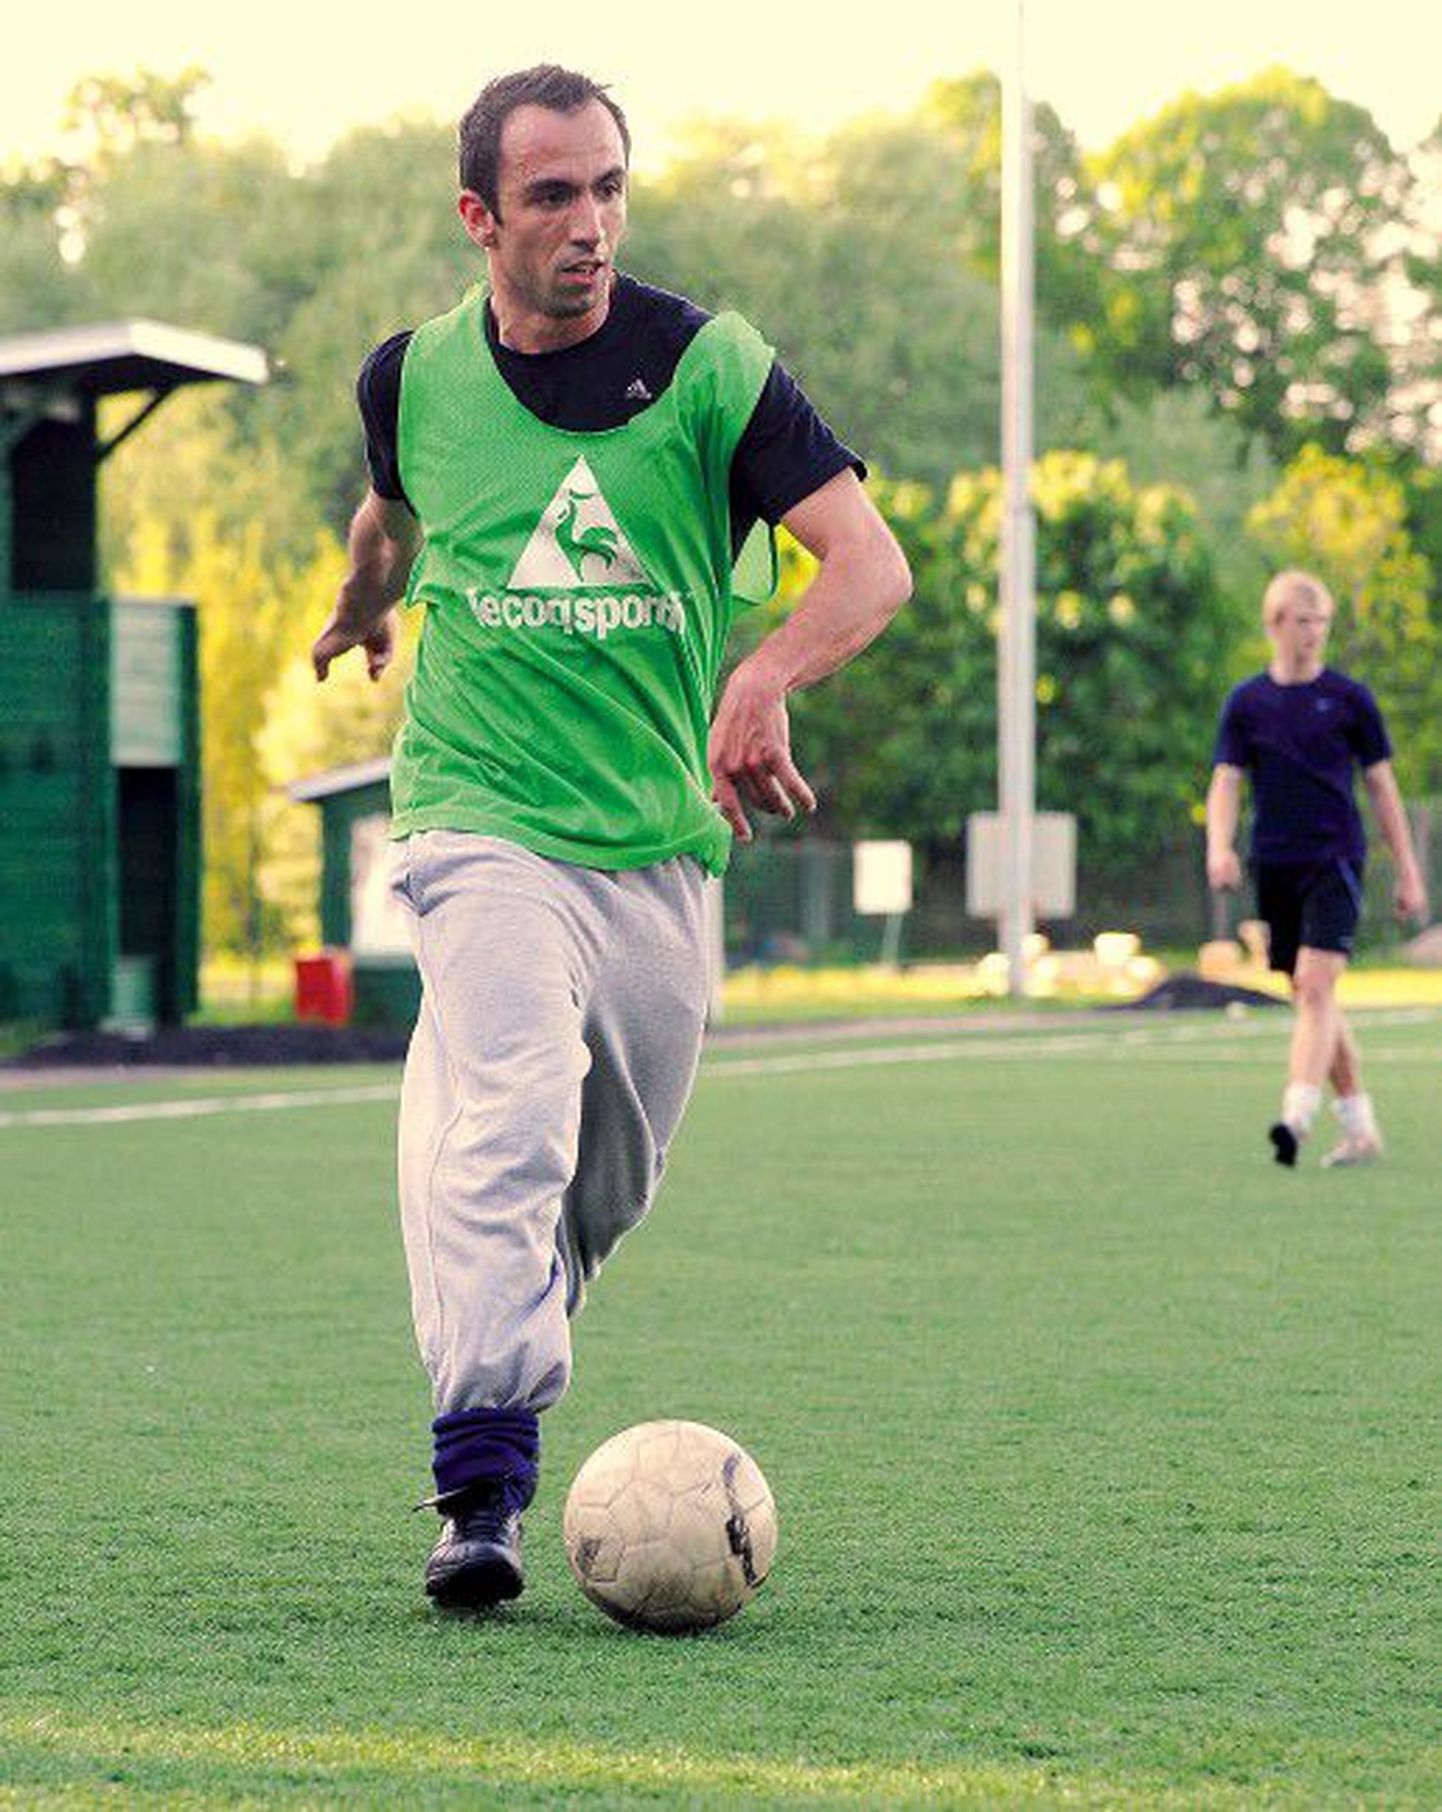 Тиаго Вентуро Лоурейро, приехав в Эстонию, сразу стал посещать тренировки по футболу, потому что это, по его словам, лучший способ найти новых друзей.